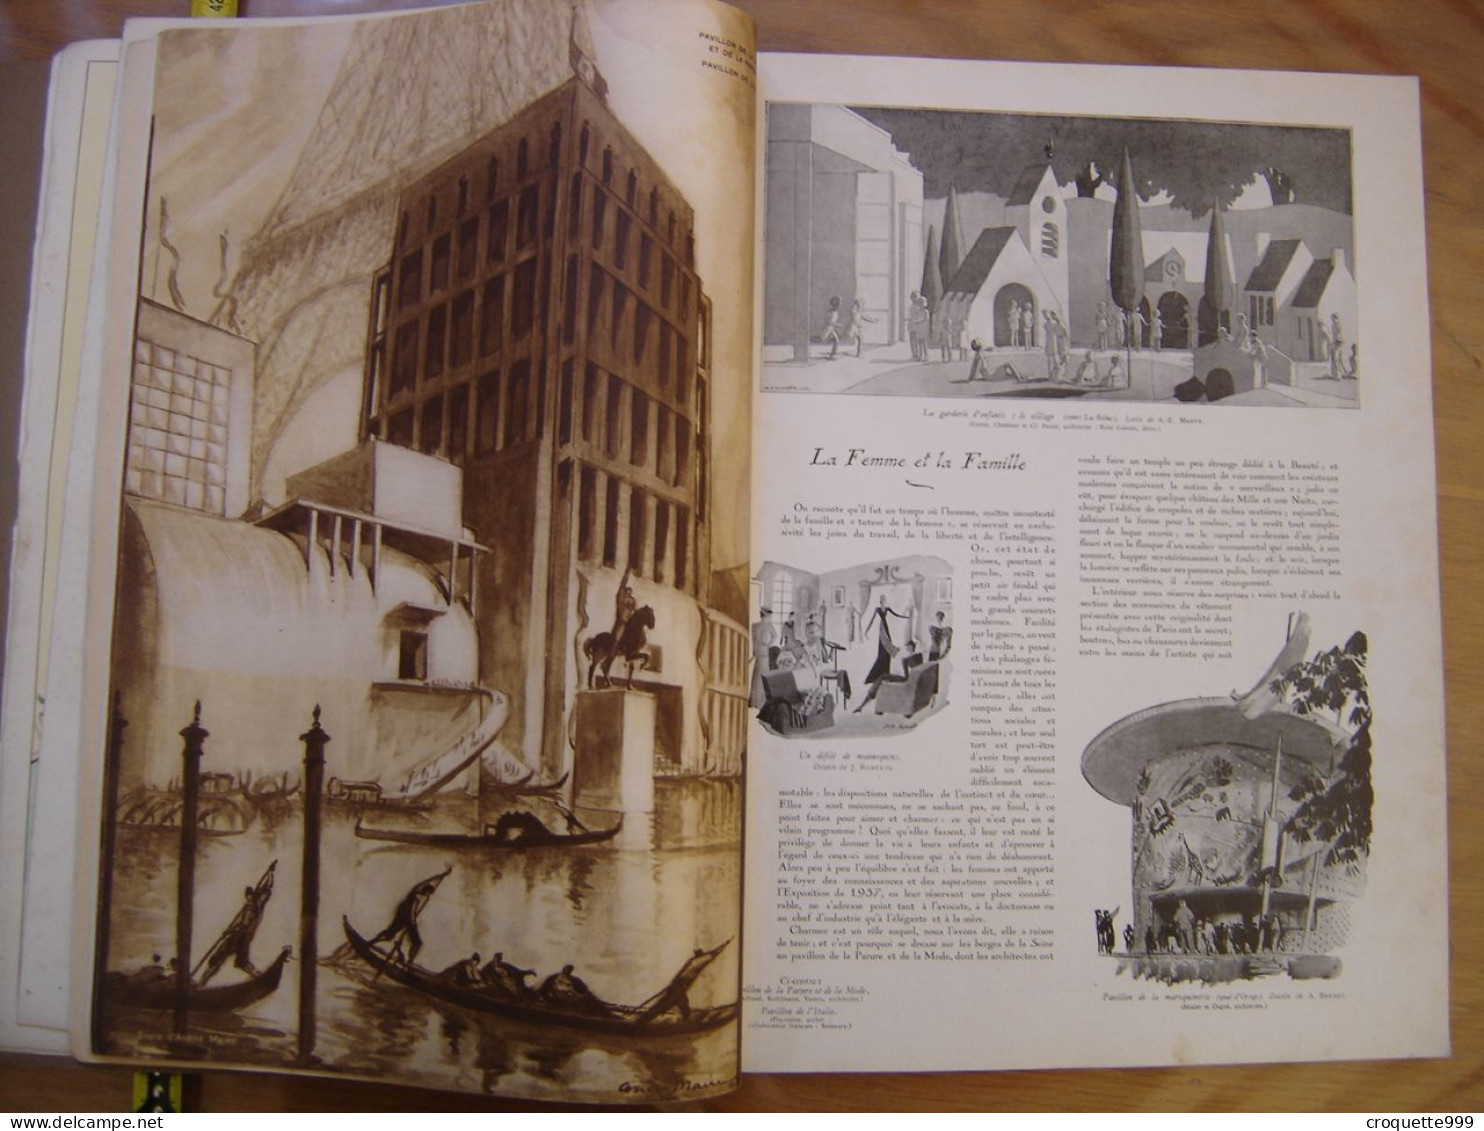 L'Illustration EXPOSITION PARIS 1937 Album Hors Serie KDO JO - 1900 - 1949